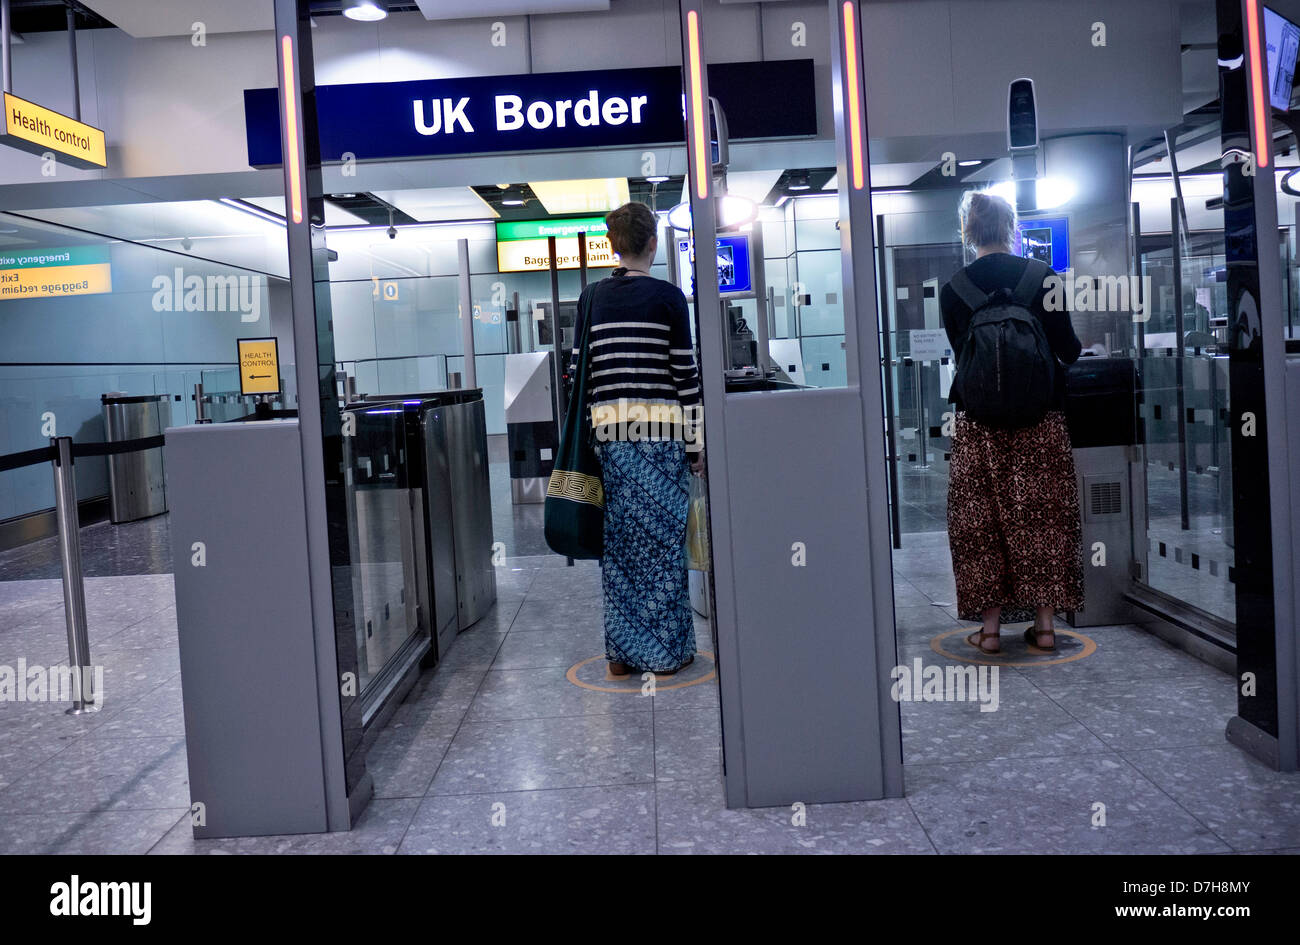 Reino Unido pasaporte biométrico control fronterizo para los pasajeros que llegan a la terminal 3 del aeropuerto de Heathrow de Londres Foto de stock